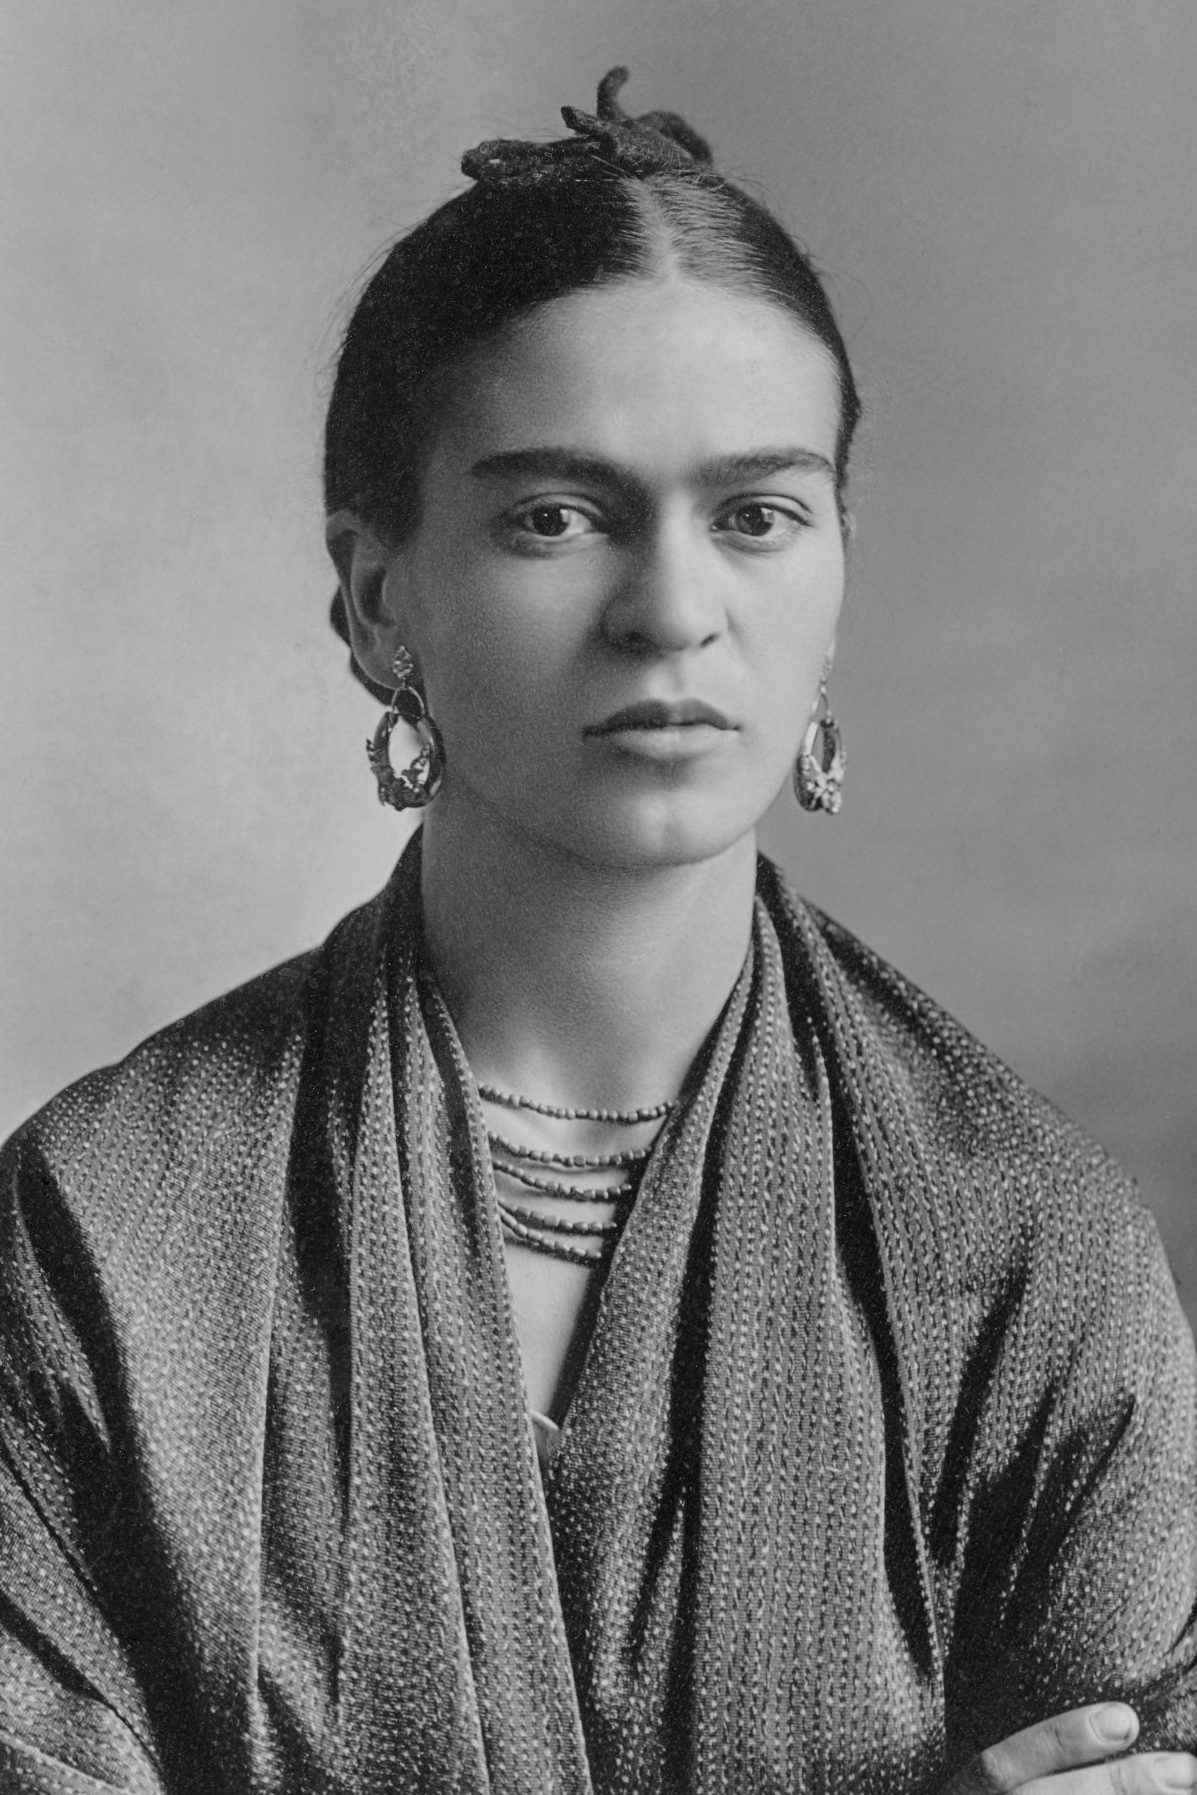 auteur Frida Kahlo de la citation Pieds, pourquoi ai-je besoin de toi quand j'ai des ailes pour voler?